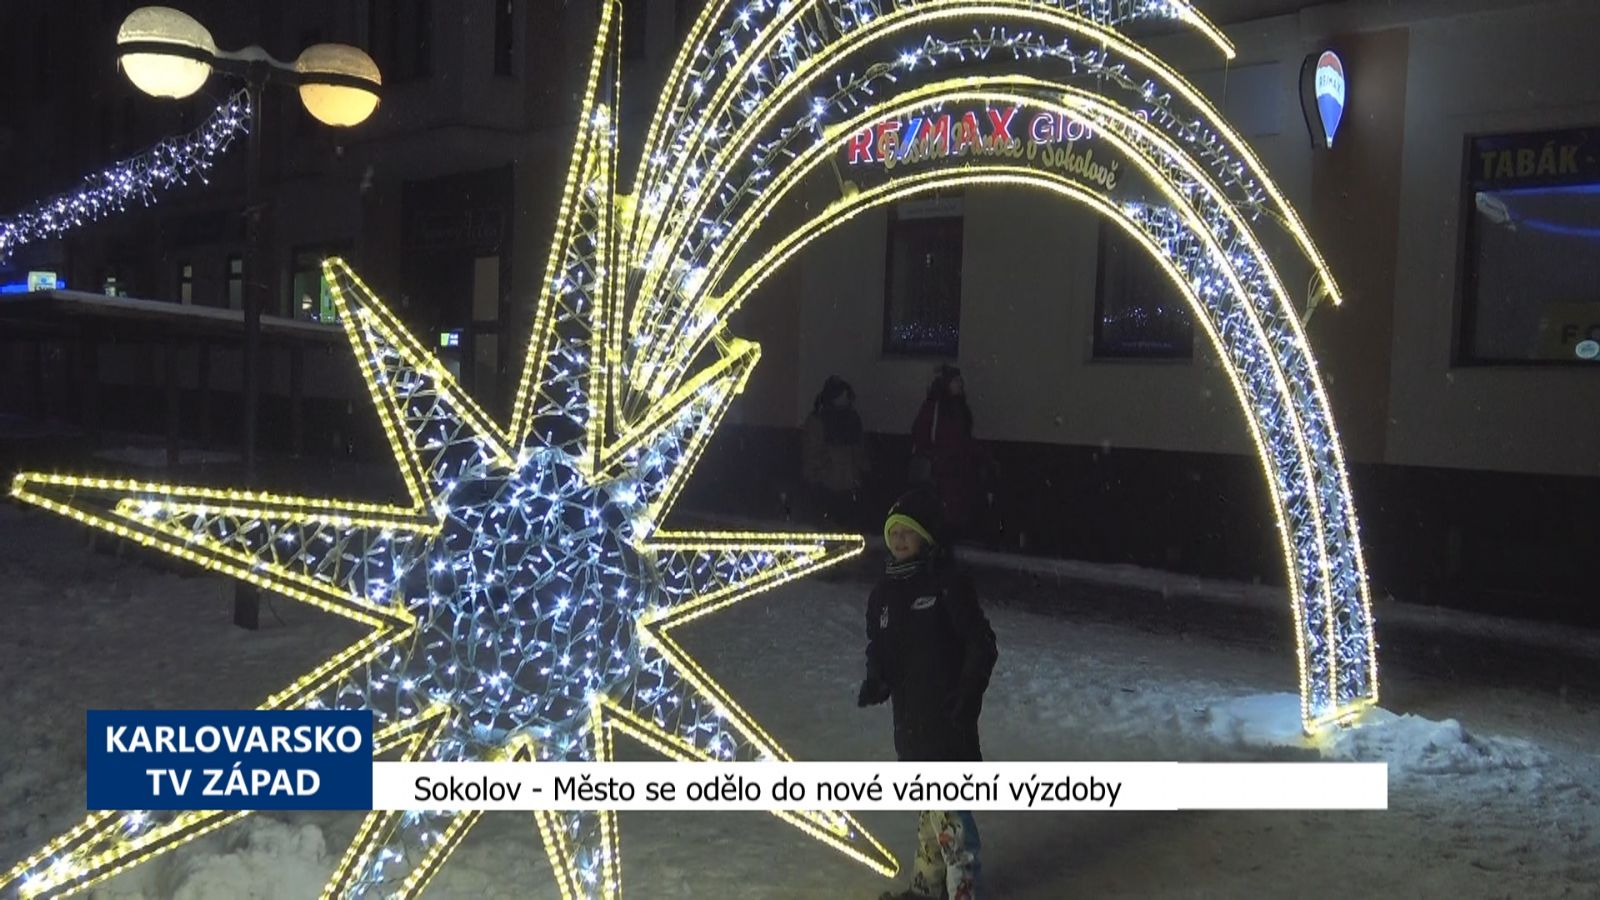 Sokolov: Město se odělo do nové vánoční výzdoby (TV Západ)